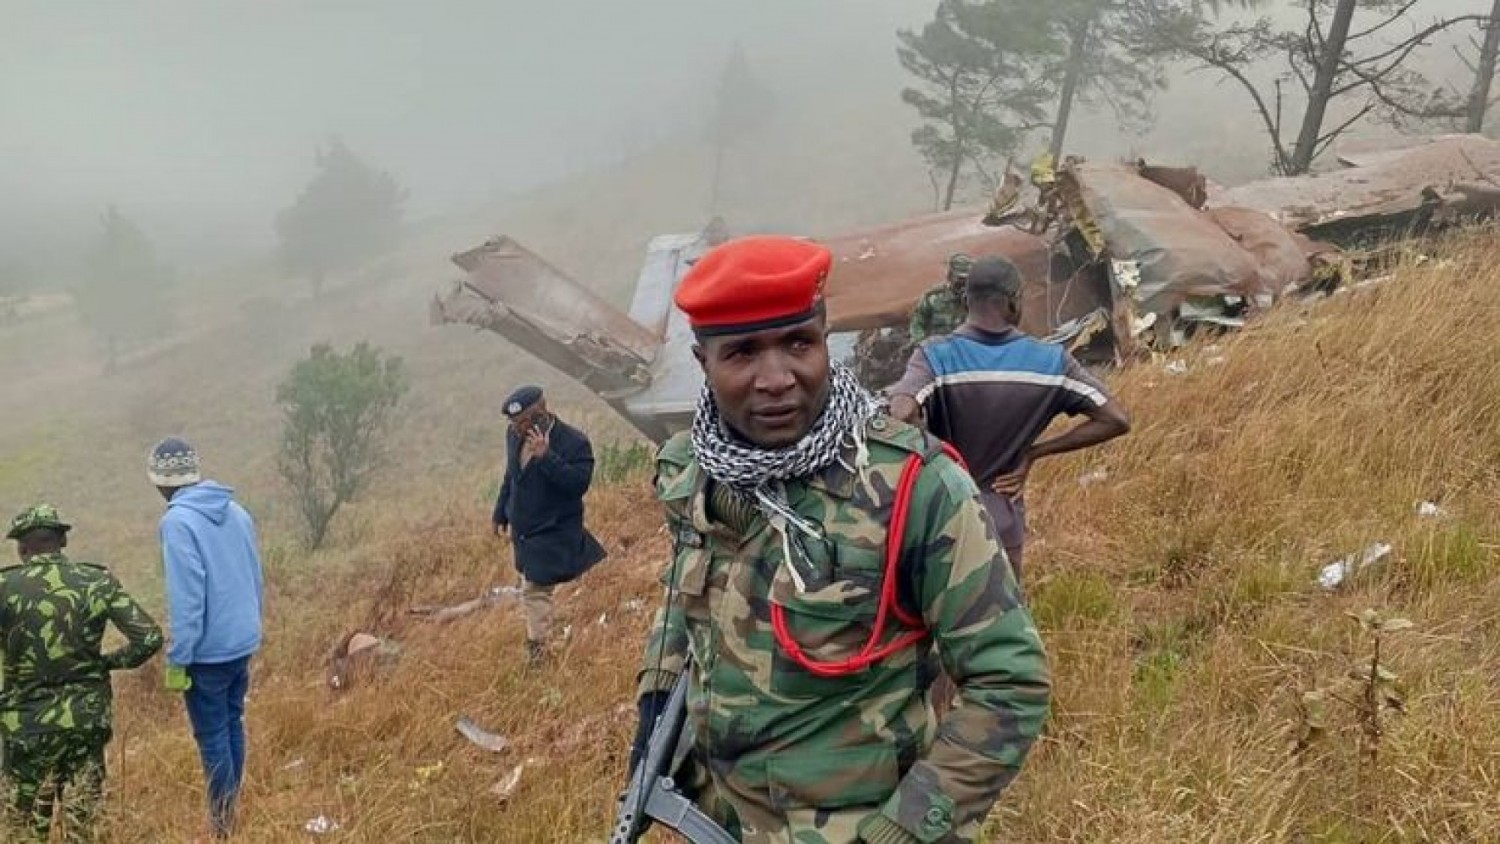 Malawi : L'avion militaire transportant le vice-Président retrouvé, aucun survivant